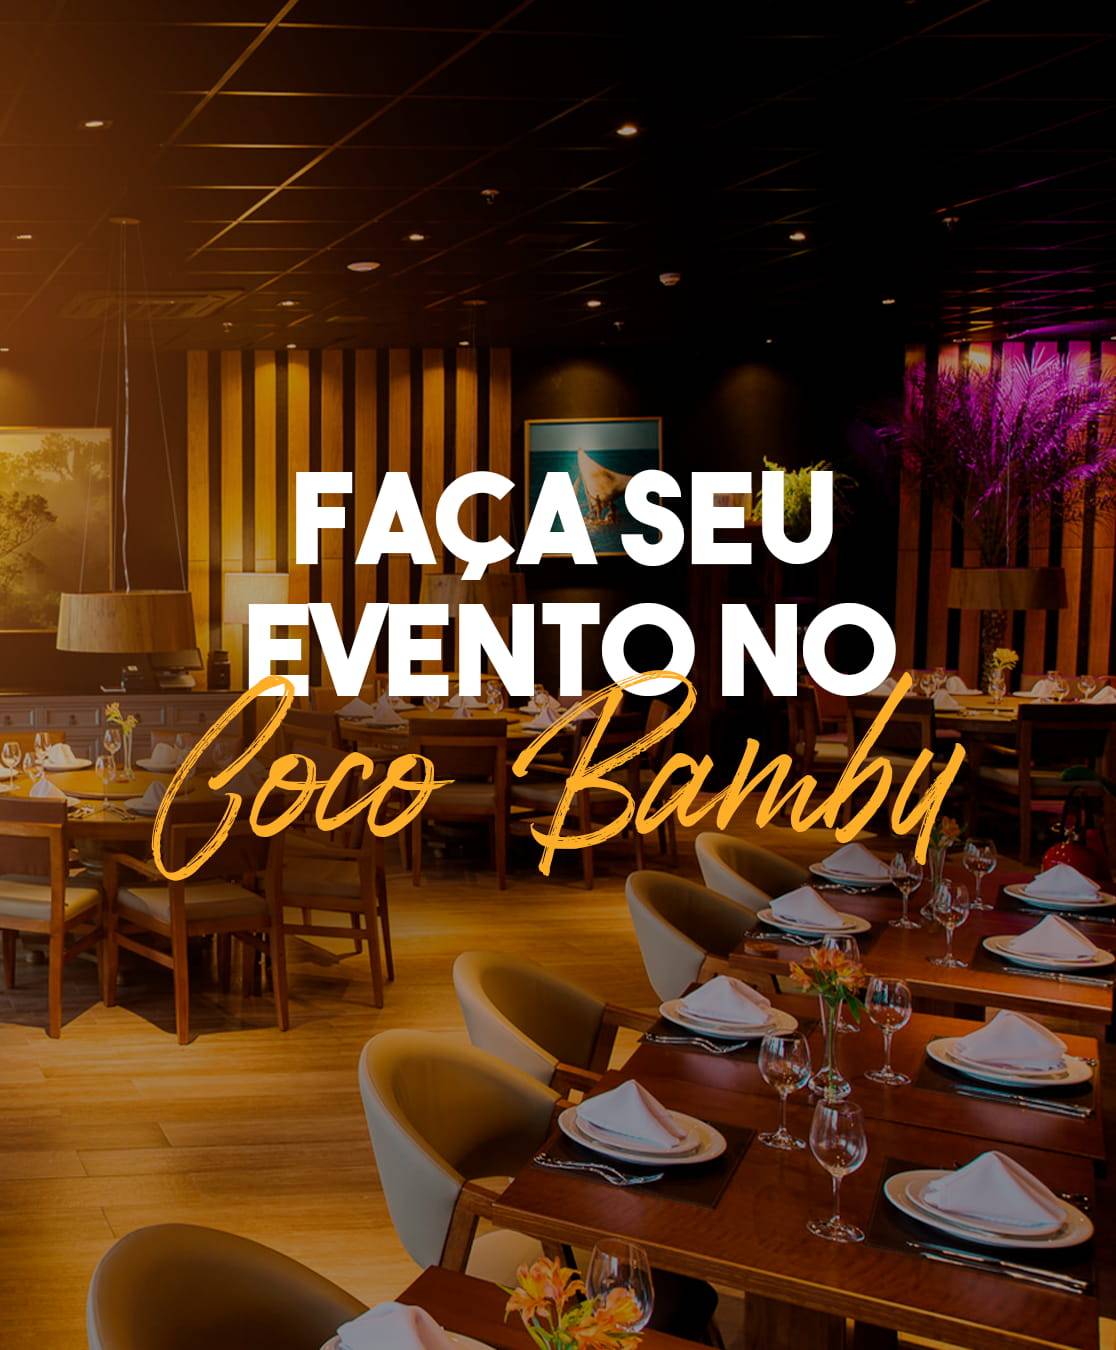 Início - Coco Bambu Restaurante